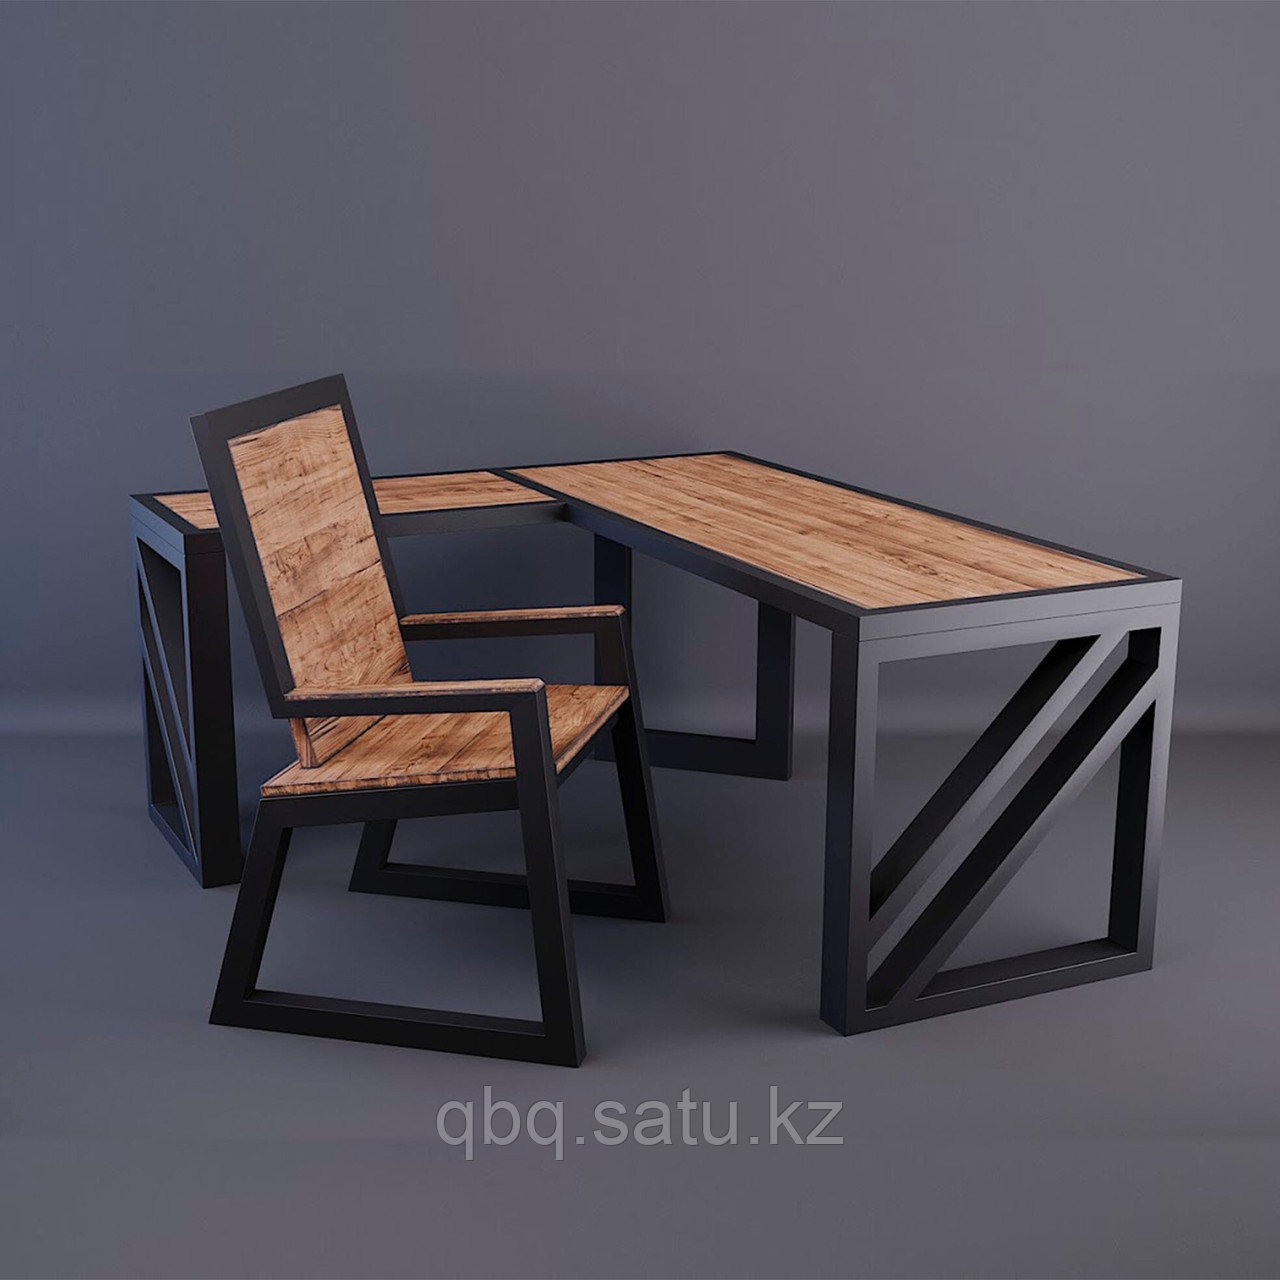 Мебель в стиле LOFT от ТОО "Qut-Bereke Qurylys"